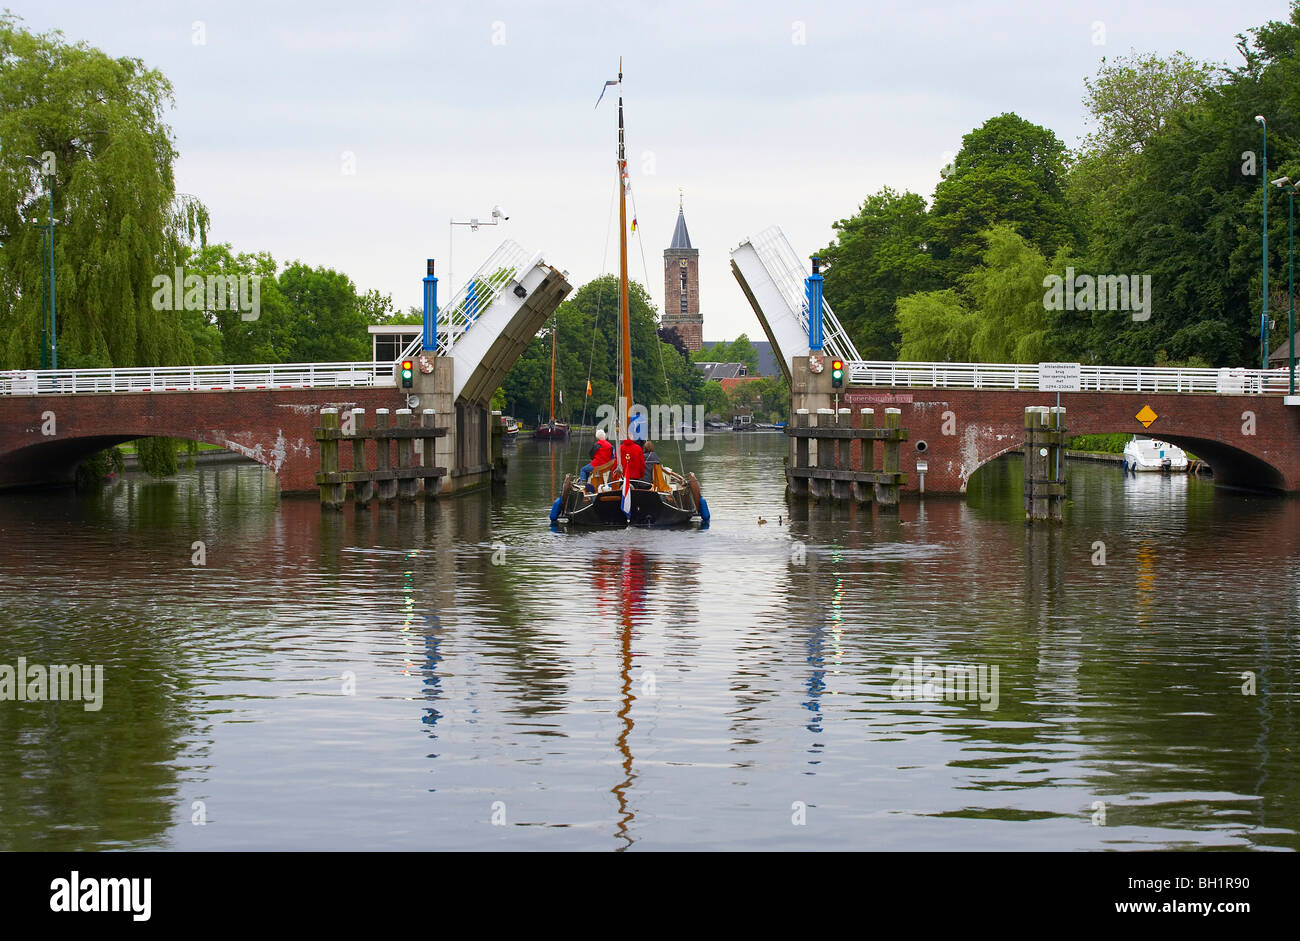 Un bateau à voile sur la rivière Vecht conduisant au-delà d'un pont à bascule, Pays-Bas, Europe Banque D'Images